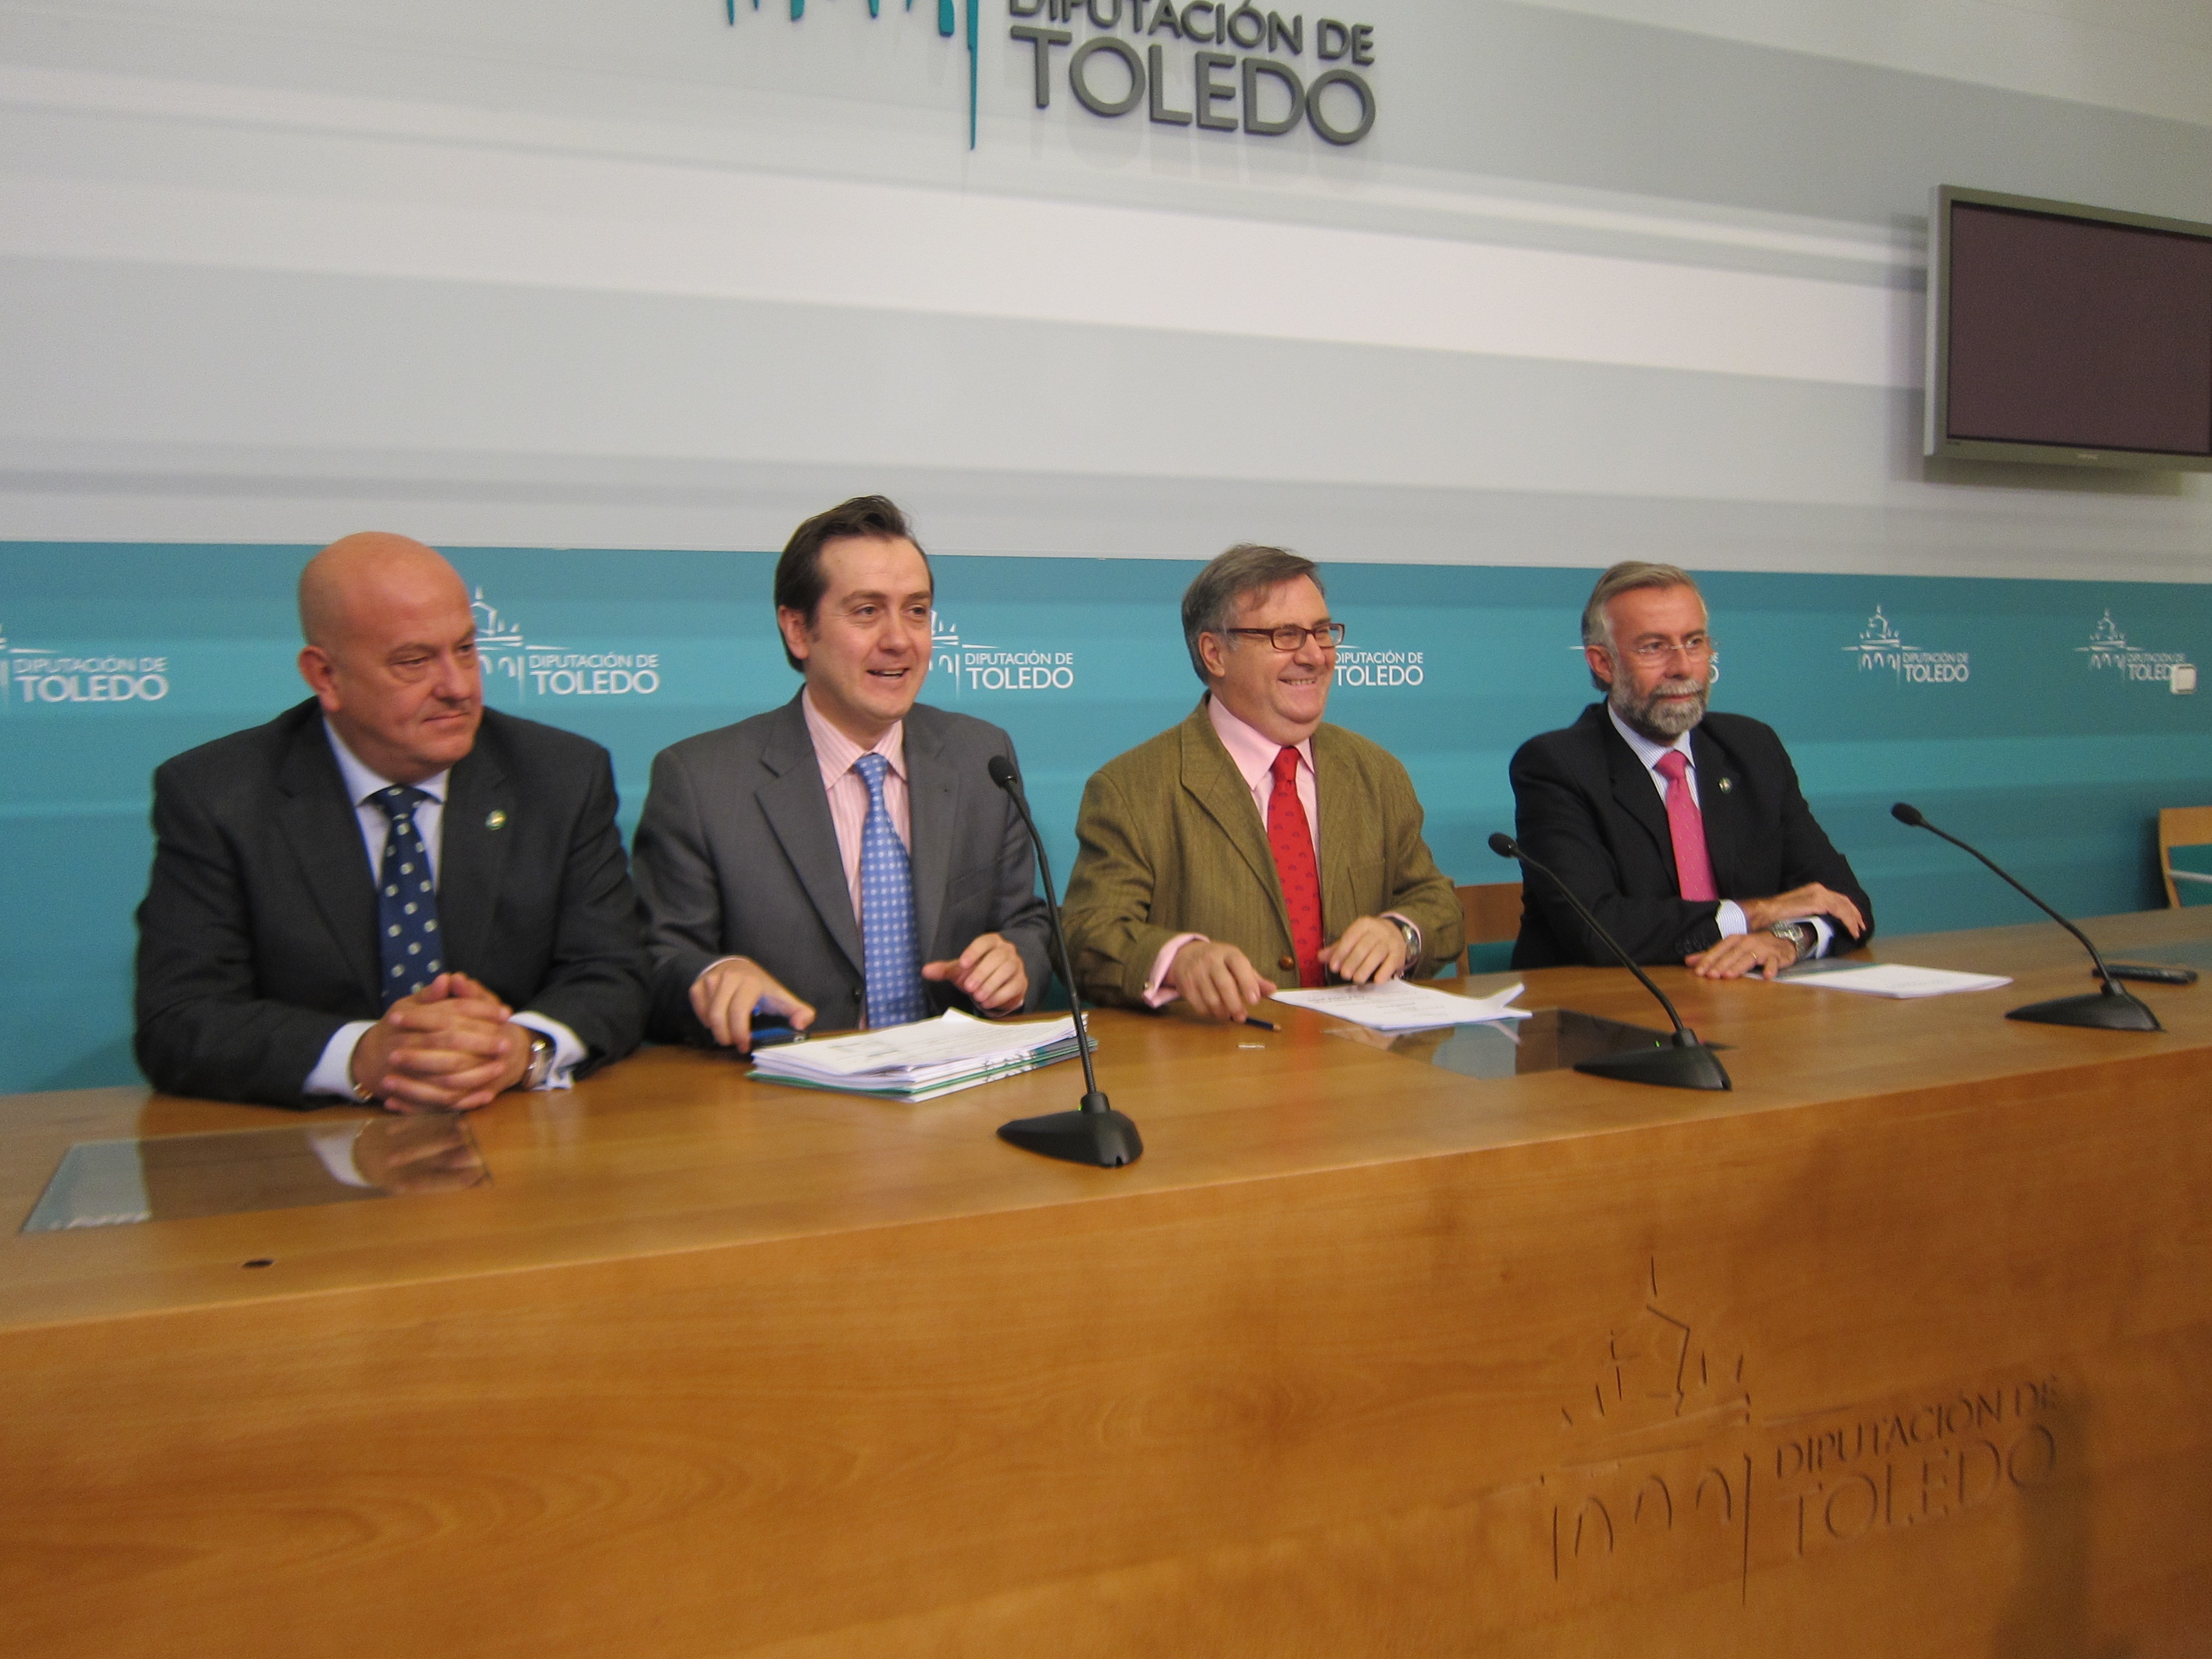 Los presupuestos para 2012 de la Diputación de Toledo se reducen en un 10%, debido a un pago que debe al Estado